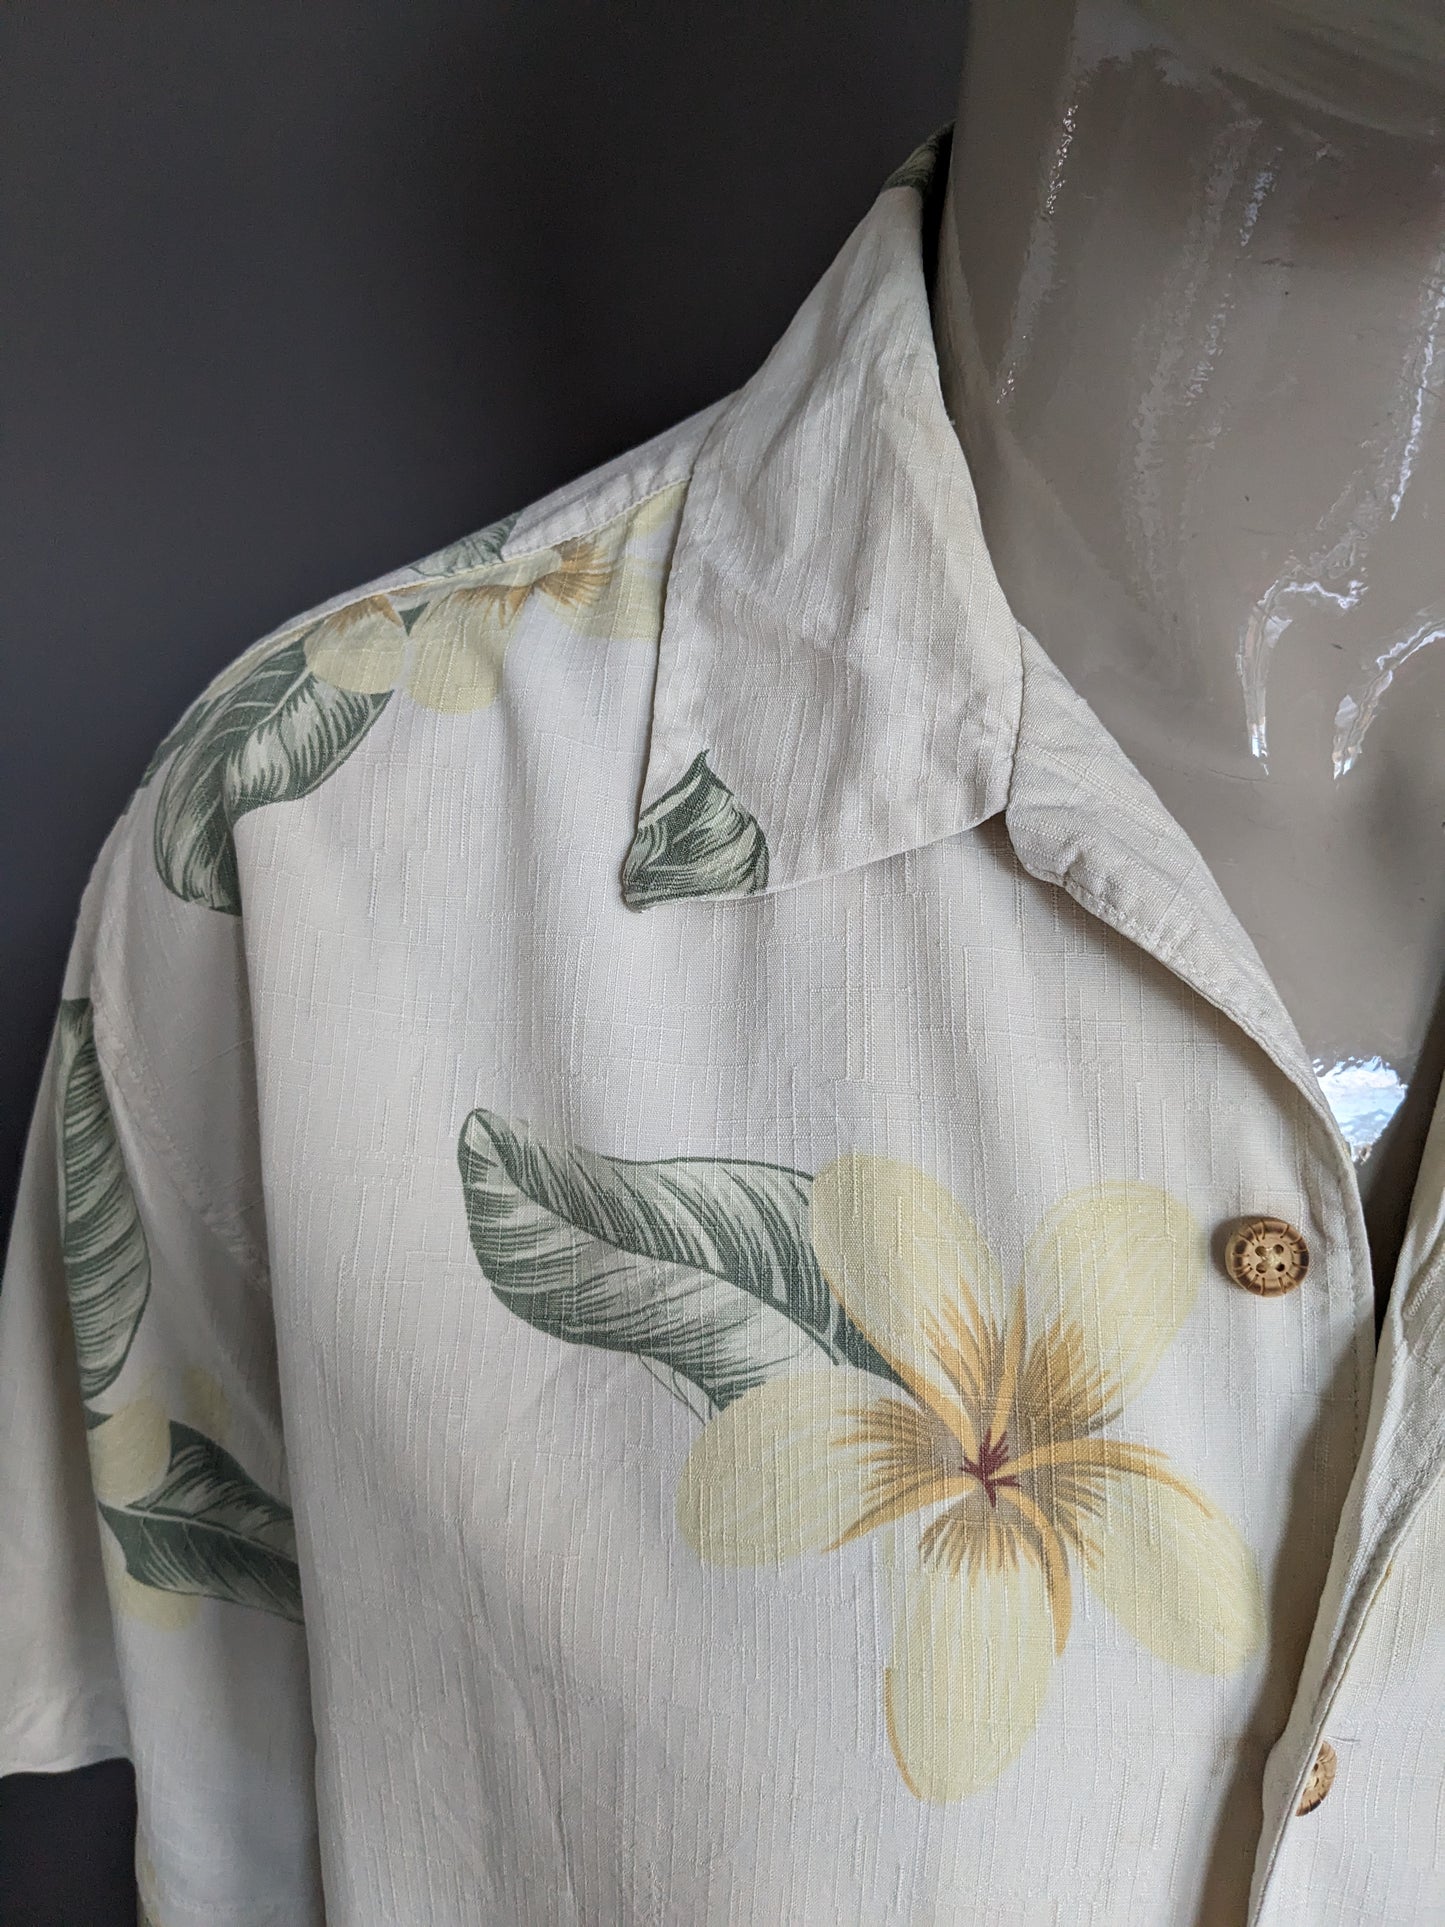 Jamaica Jaxx Camisa de Hawai original manga corta. Seda con flores de color verde amarillo beige estampado. Tamaño xl.